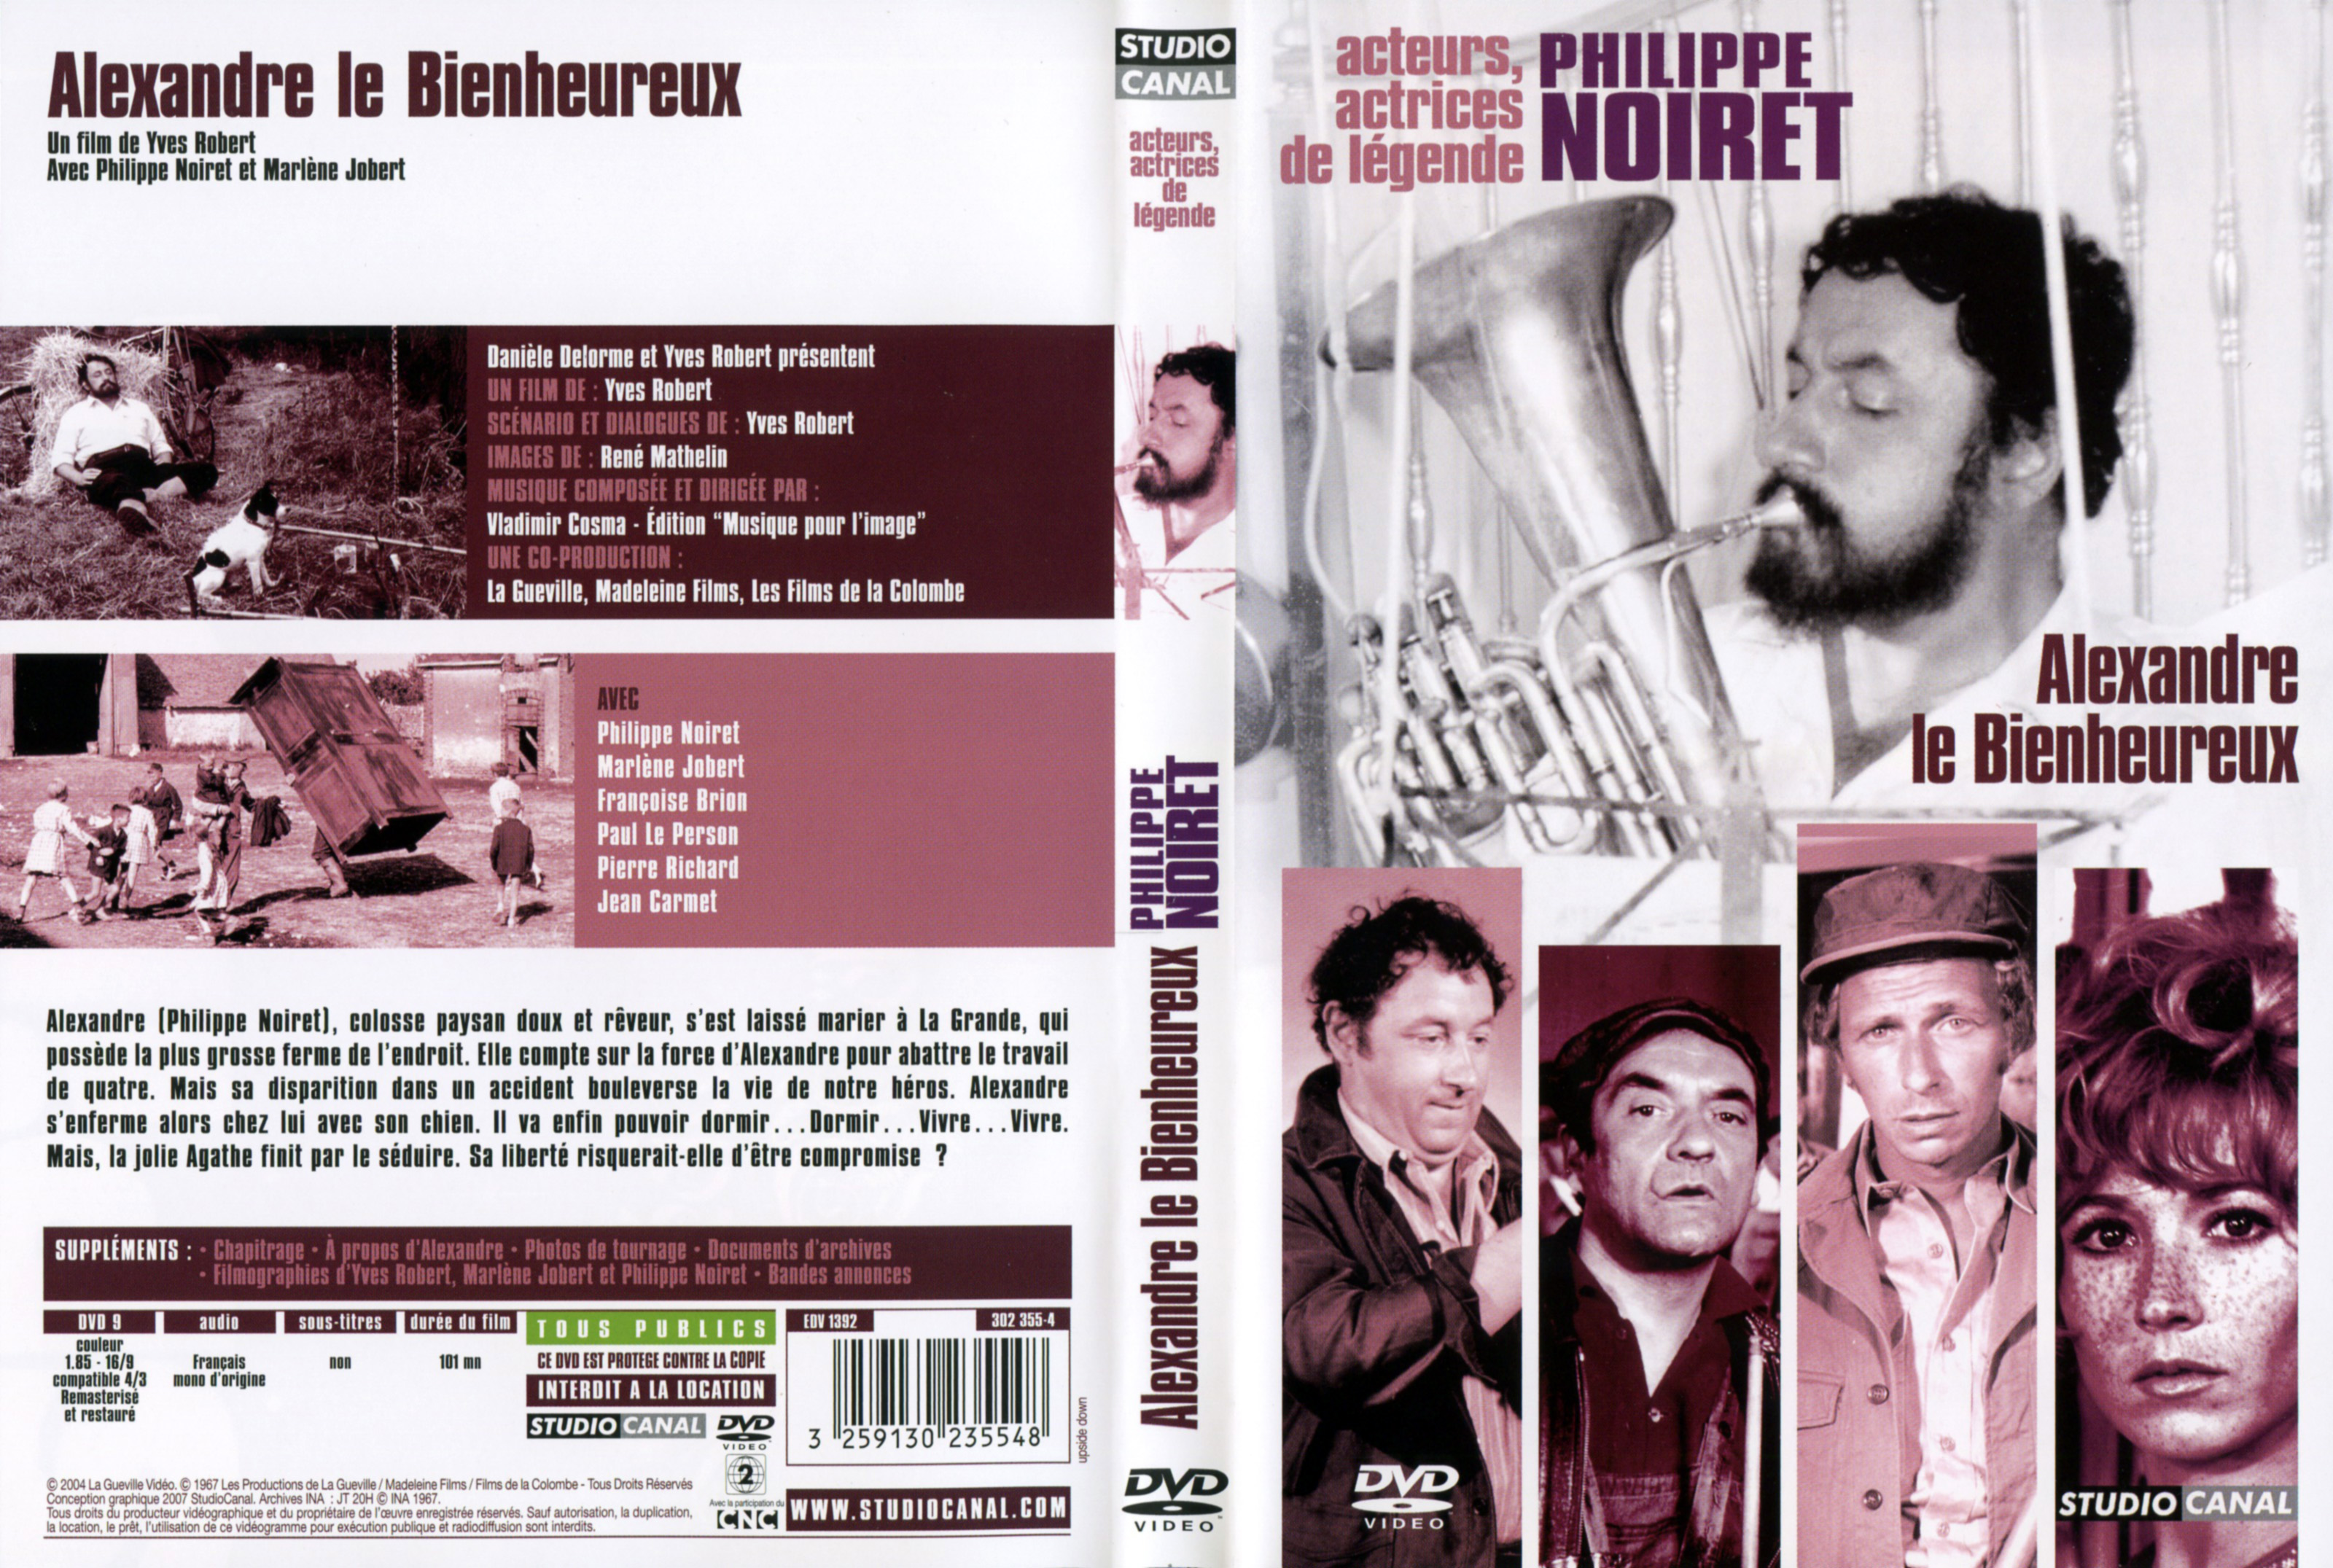 Jaquette DVD Alexandre le Bienheureux v2